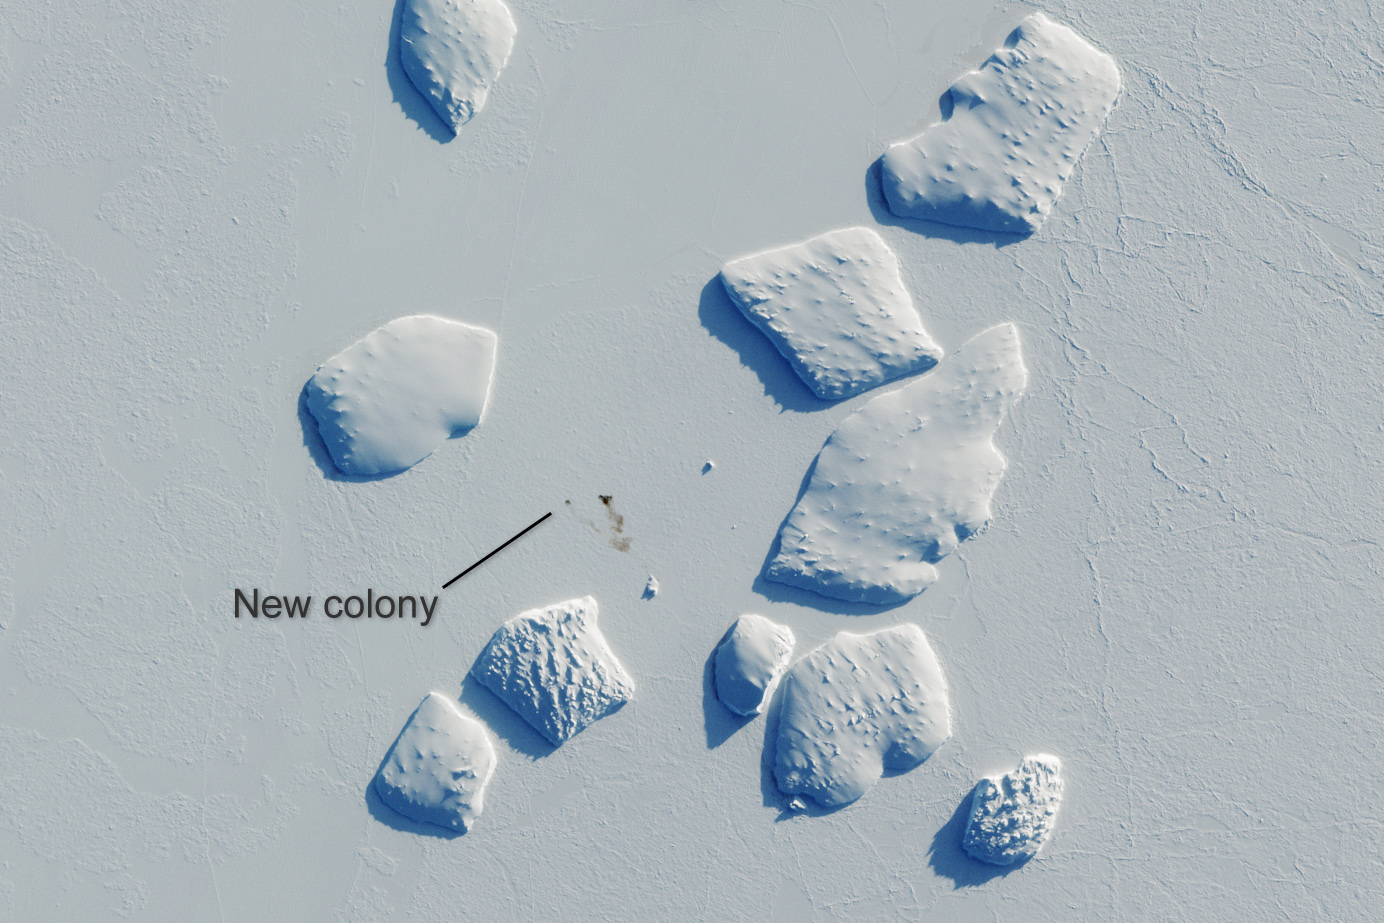 Ninnis Bank - jedna z nowych kolonii pingwina cesarskiego, odkryta dzięki zastosowaniu zobrazowań satelitarnych Sentinel-2. Brązowe plamki na lodzie to ptasie odchody. Uwięzione w lodzie góry lodowe mają po około 2 km średnicy. For. ESA.